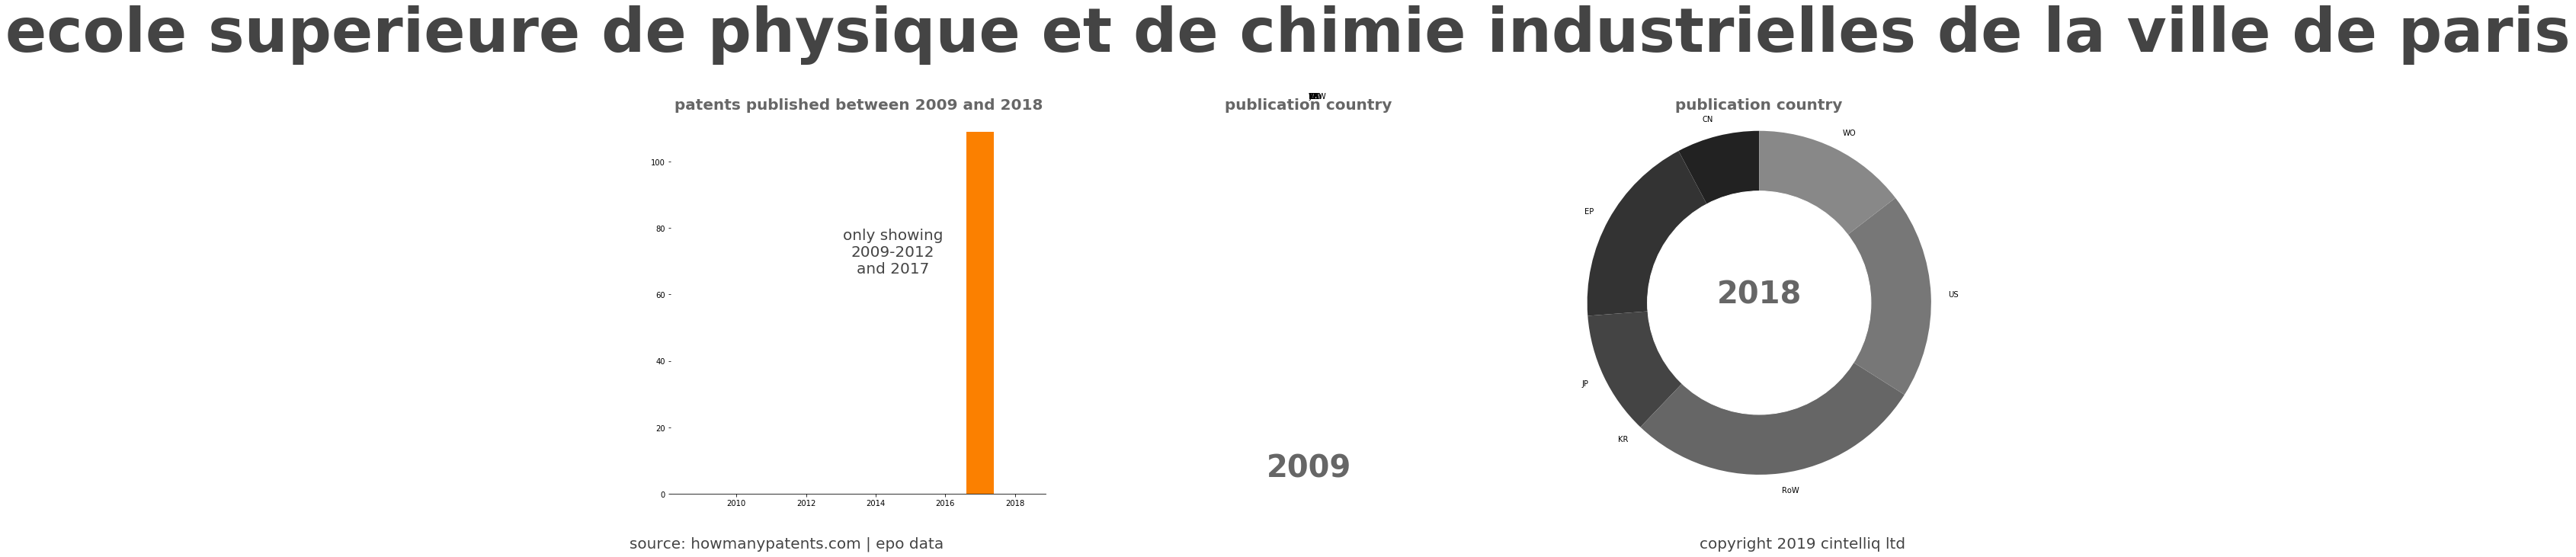 summary of patents for Ecole Superieure De Physique Et De Chimie Industrielles De La Ville De Paris